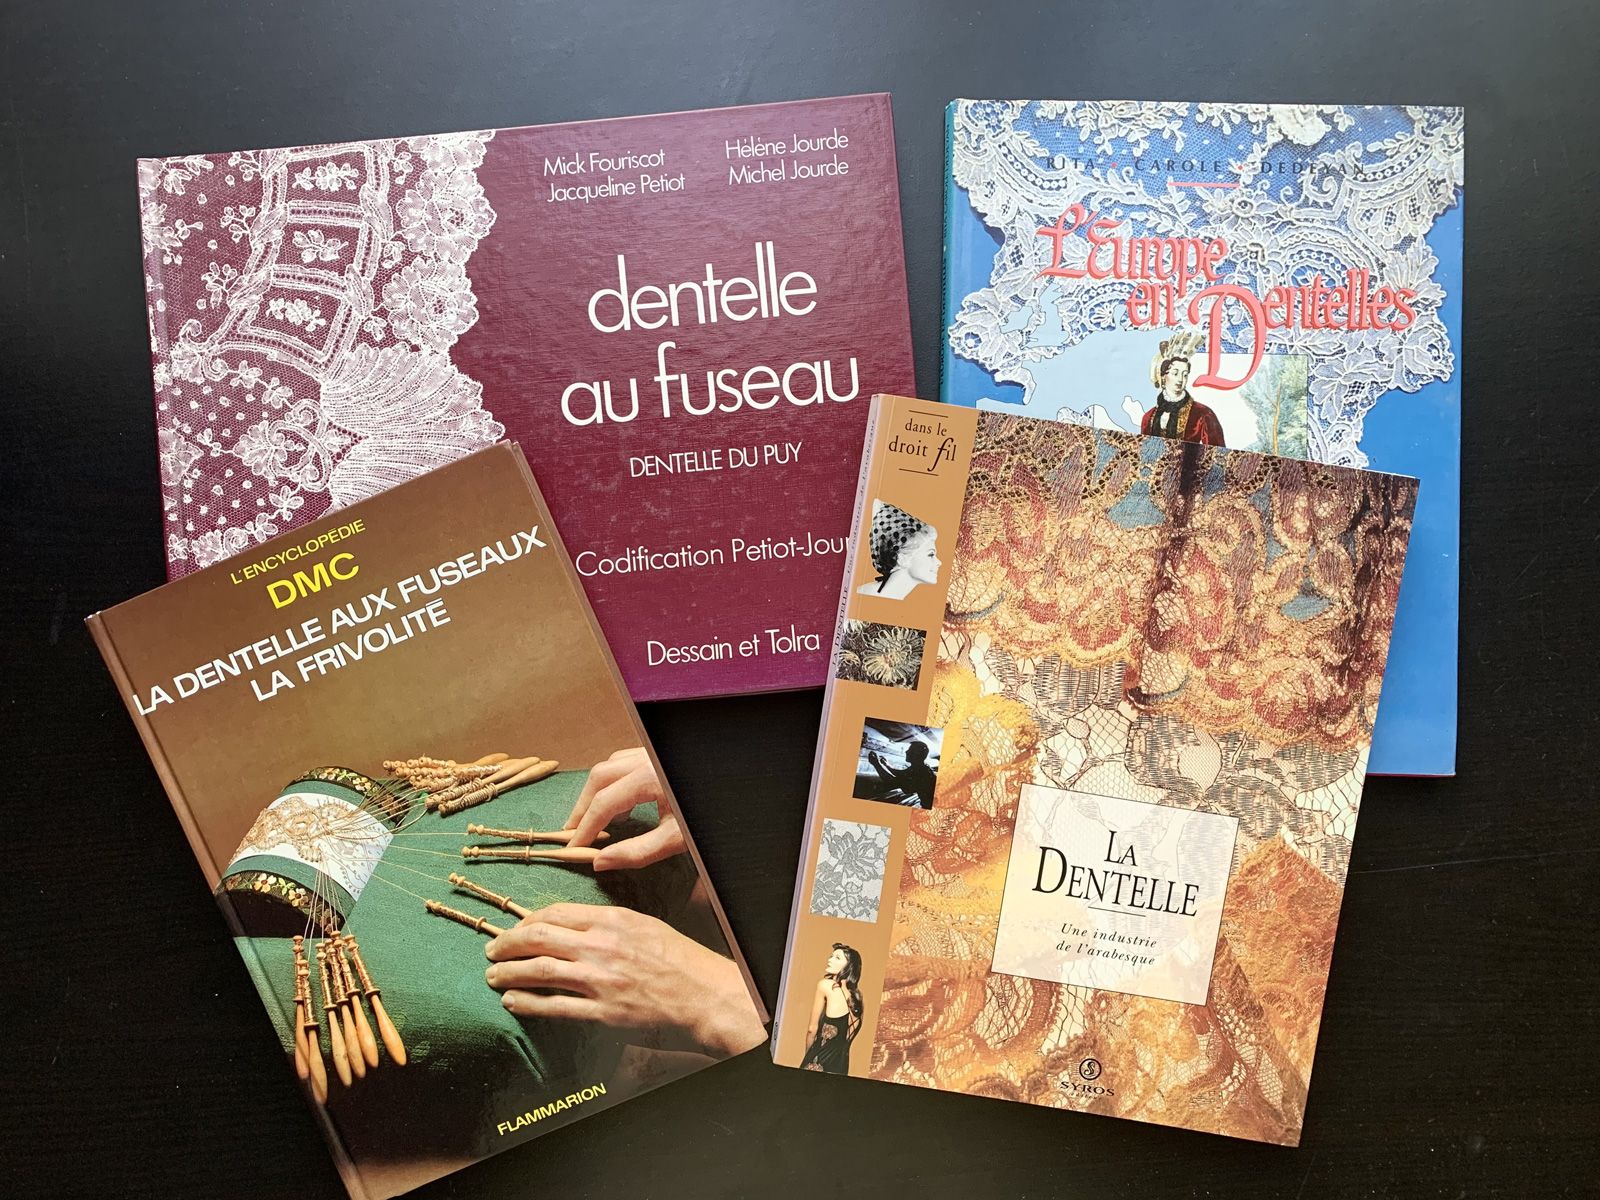 Null 四本关于花边的法文书籍。
两本关于花边技术的书籍《Dentelle au fuseau - Dentelle du Puy》和《La dentelle&hellip;